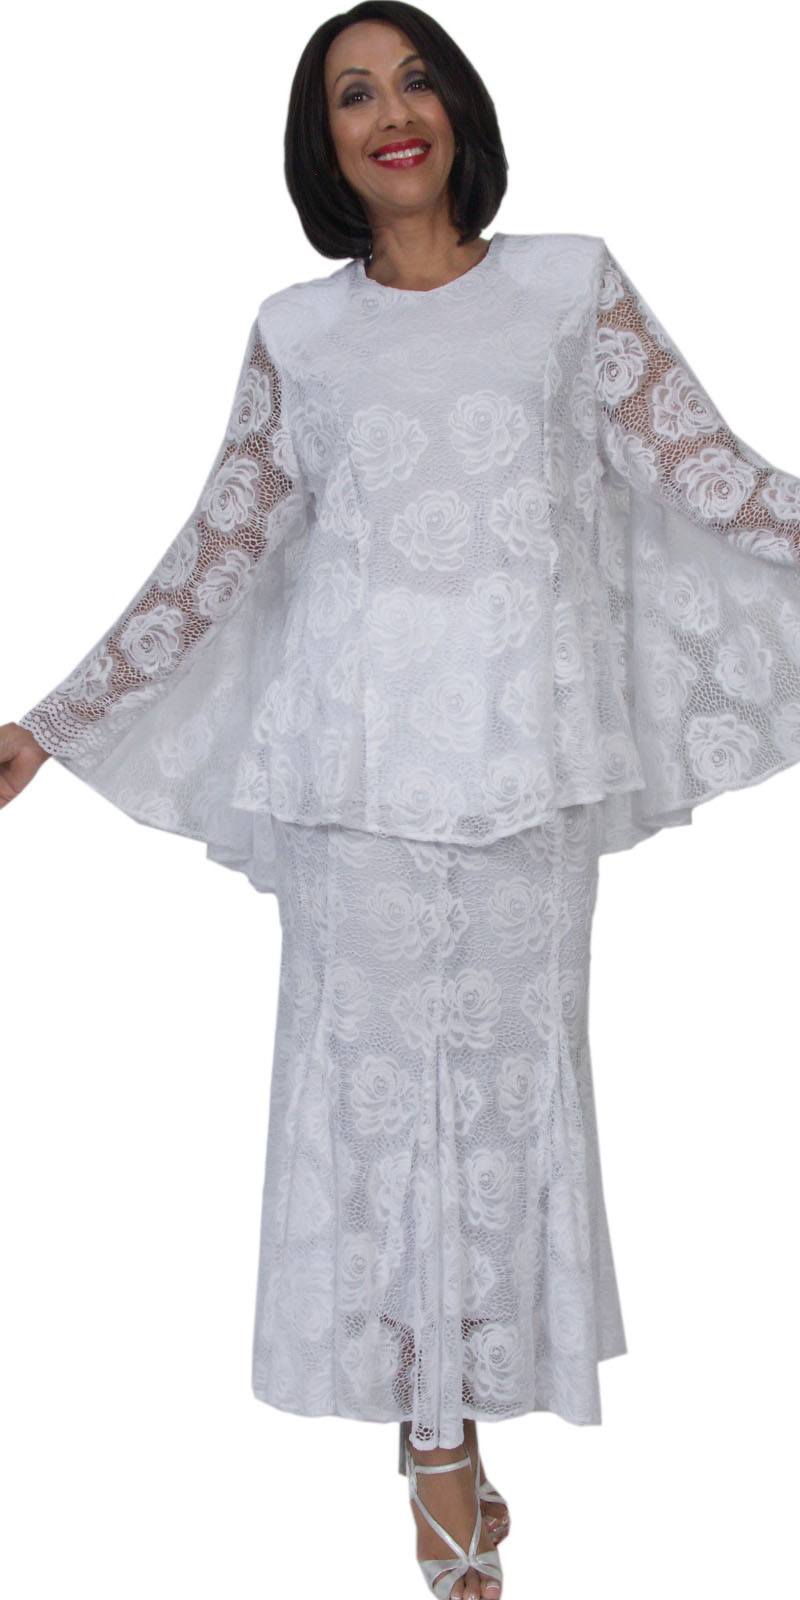 Hosanna 5292 Plus Size 3 Piece Set White Tea Length Lace Dress ...